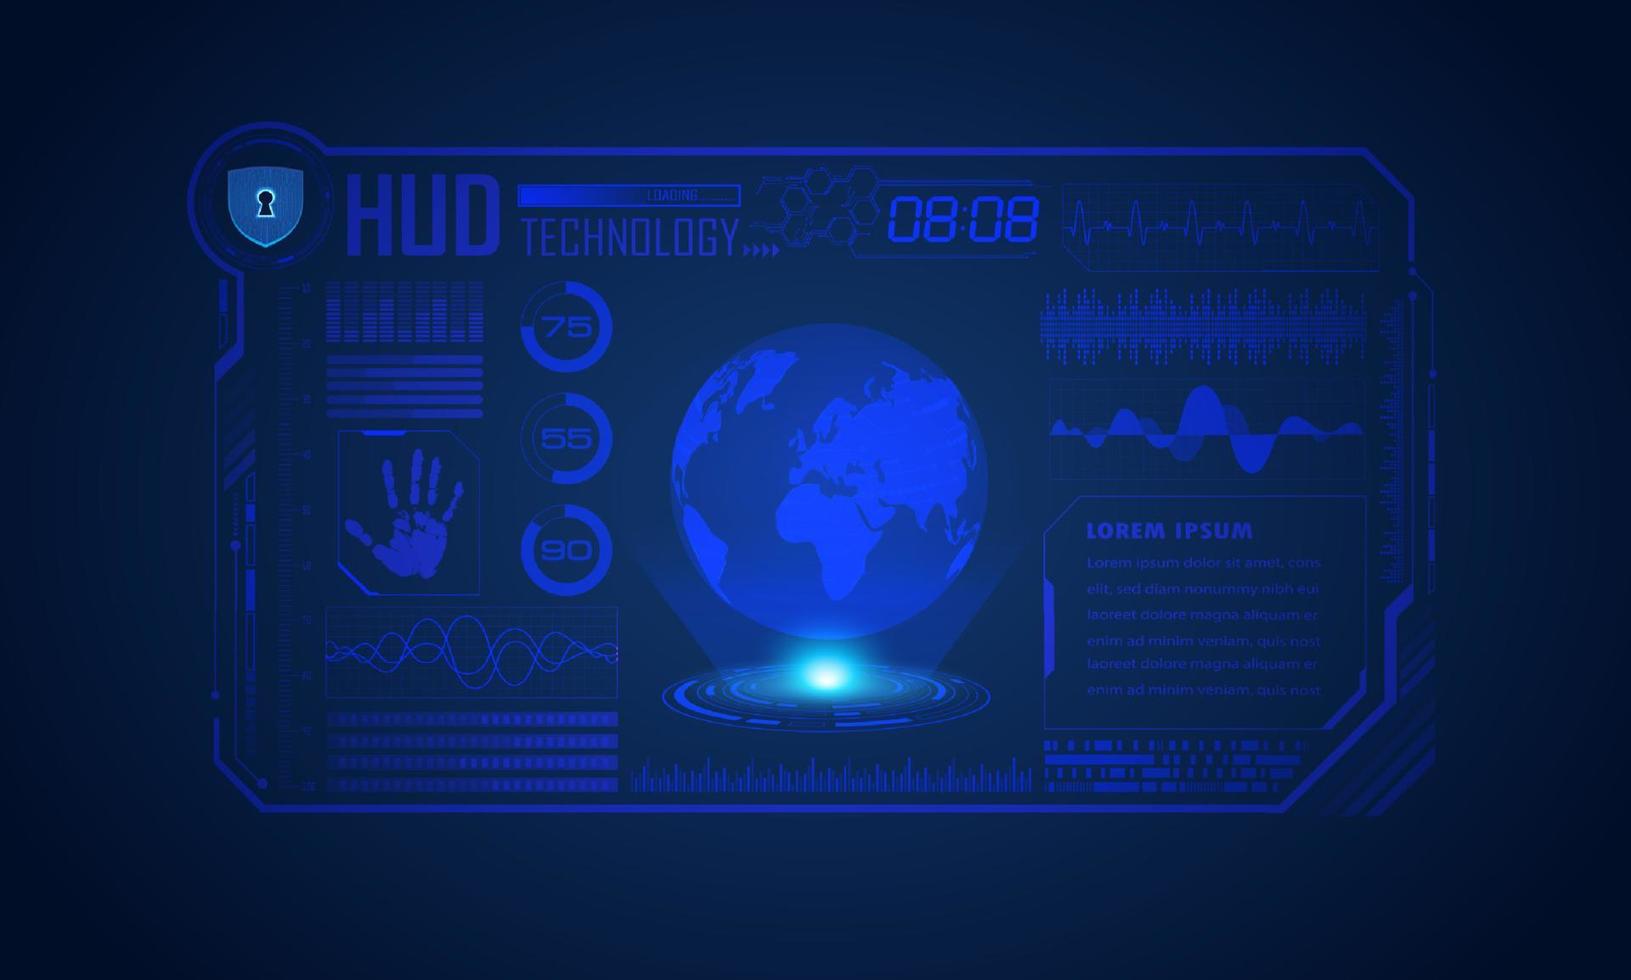 moderner hud-technologie-bildschirmhintergrund mit blauem globus vektor